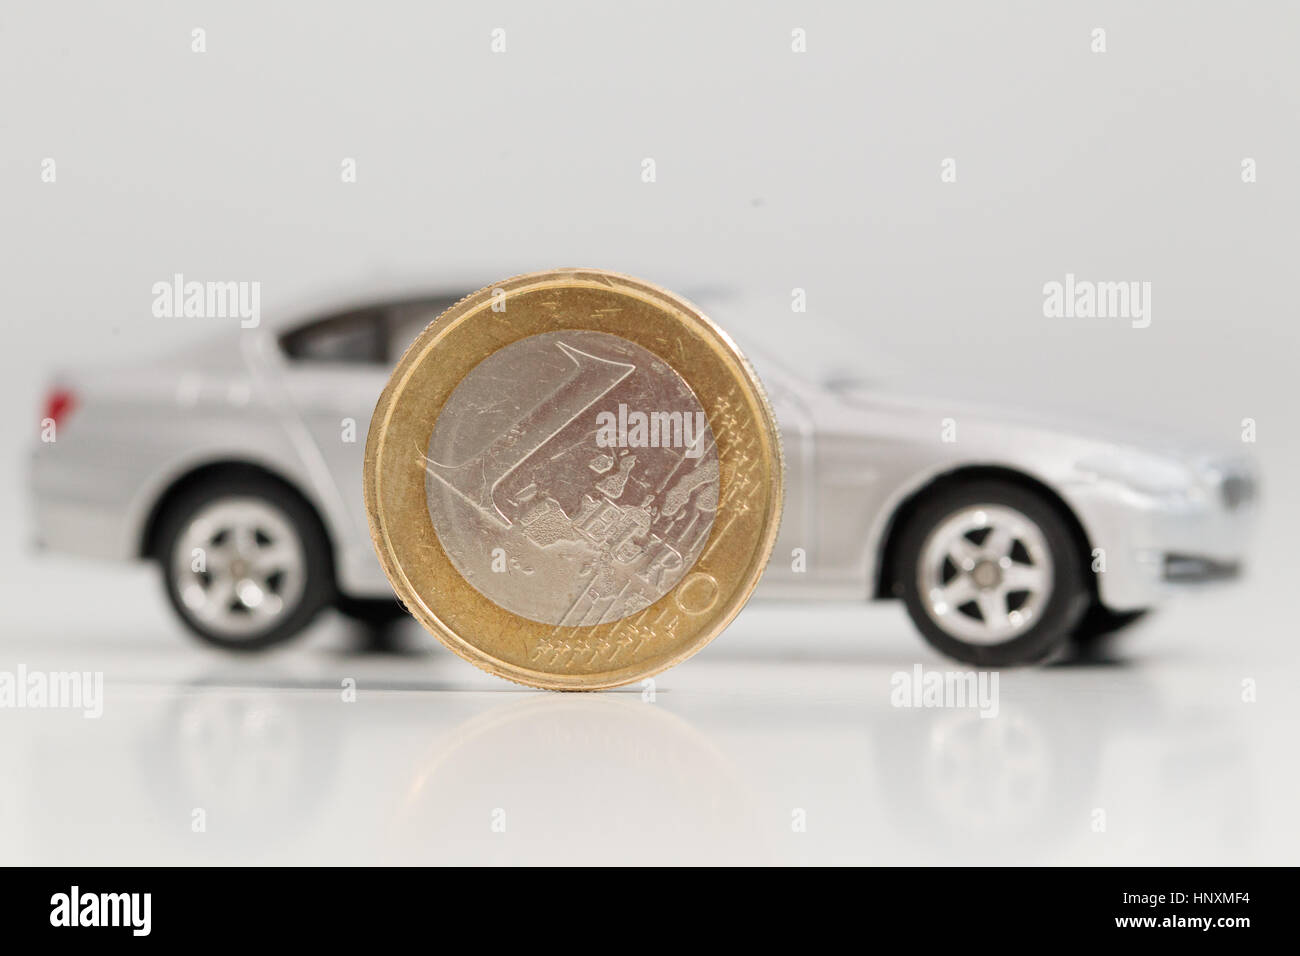 Ein Modellauto wird mit Euro-Währung-Einheiten gesehen. Stockfoto